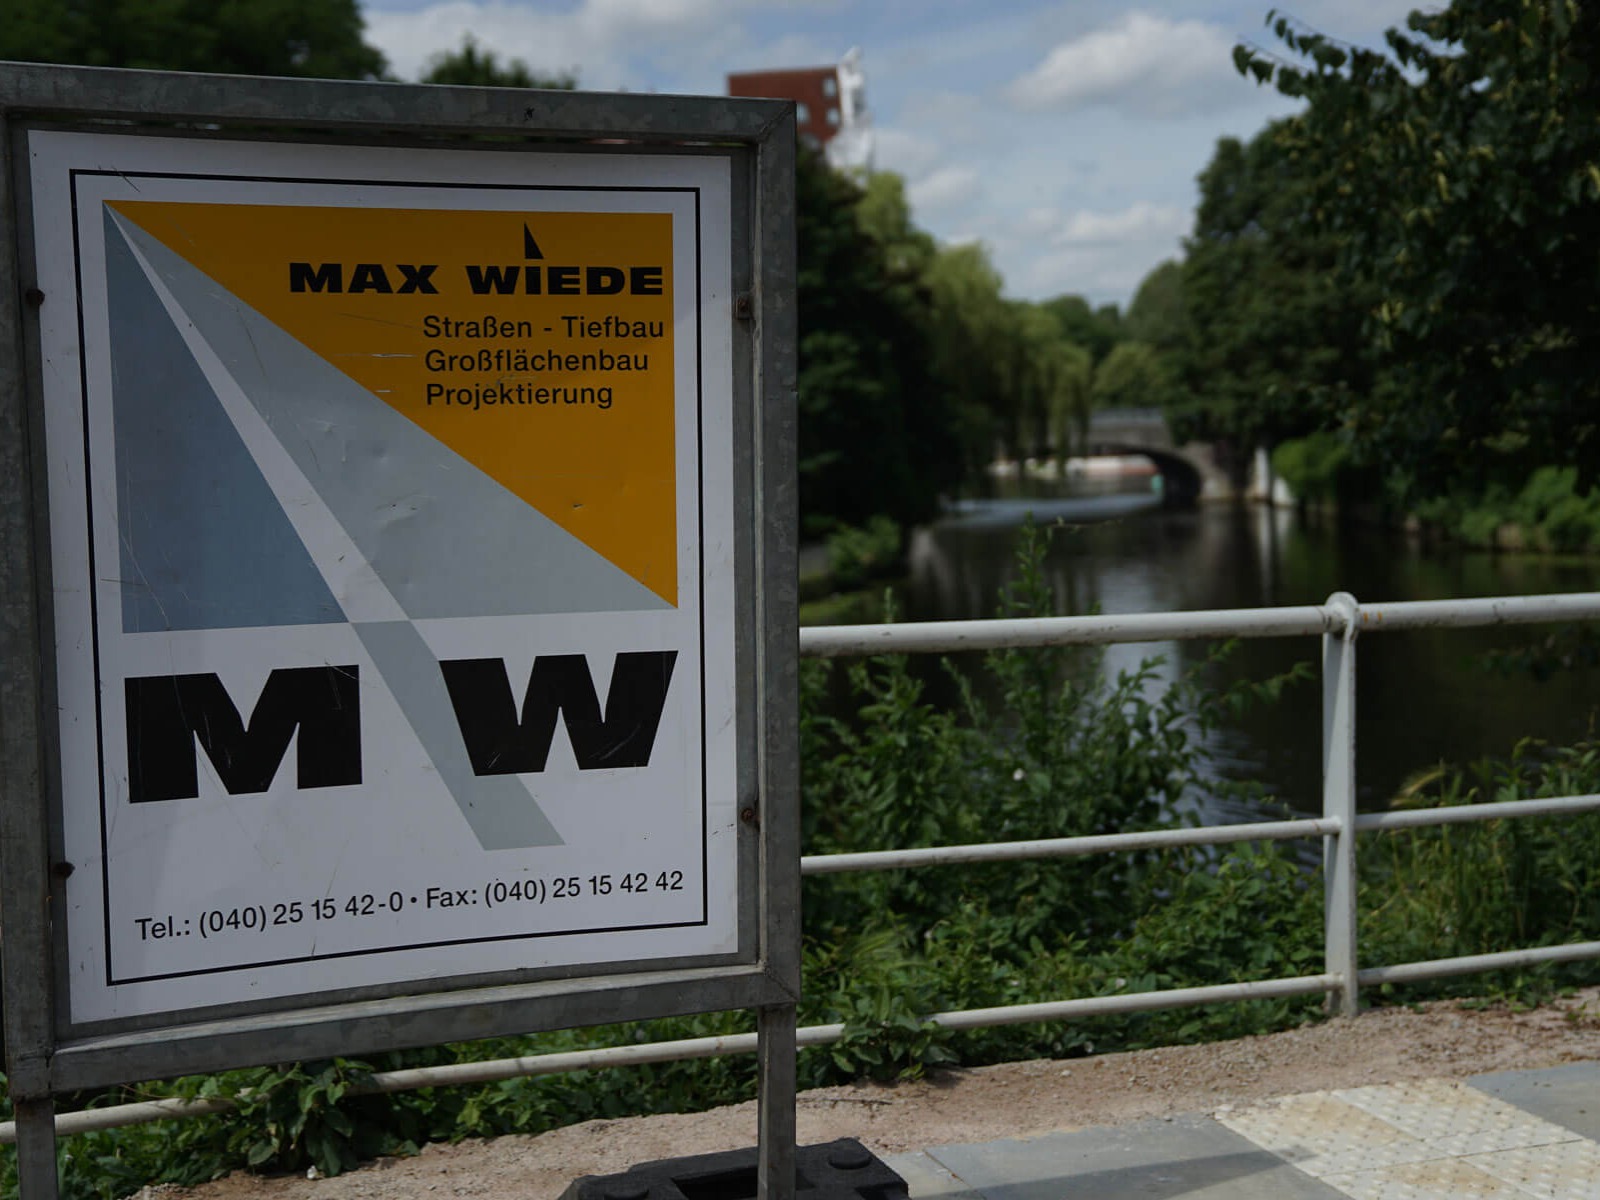 Max Wiede GmbH & Co. KG, Rungedamm 53 in Hamburg